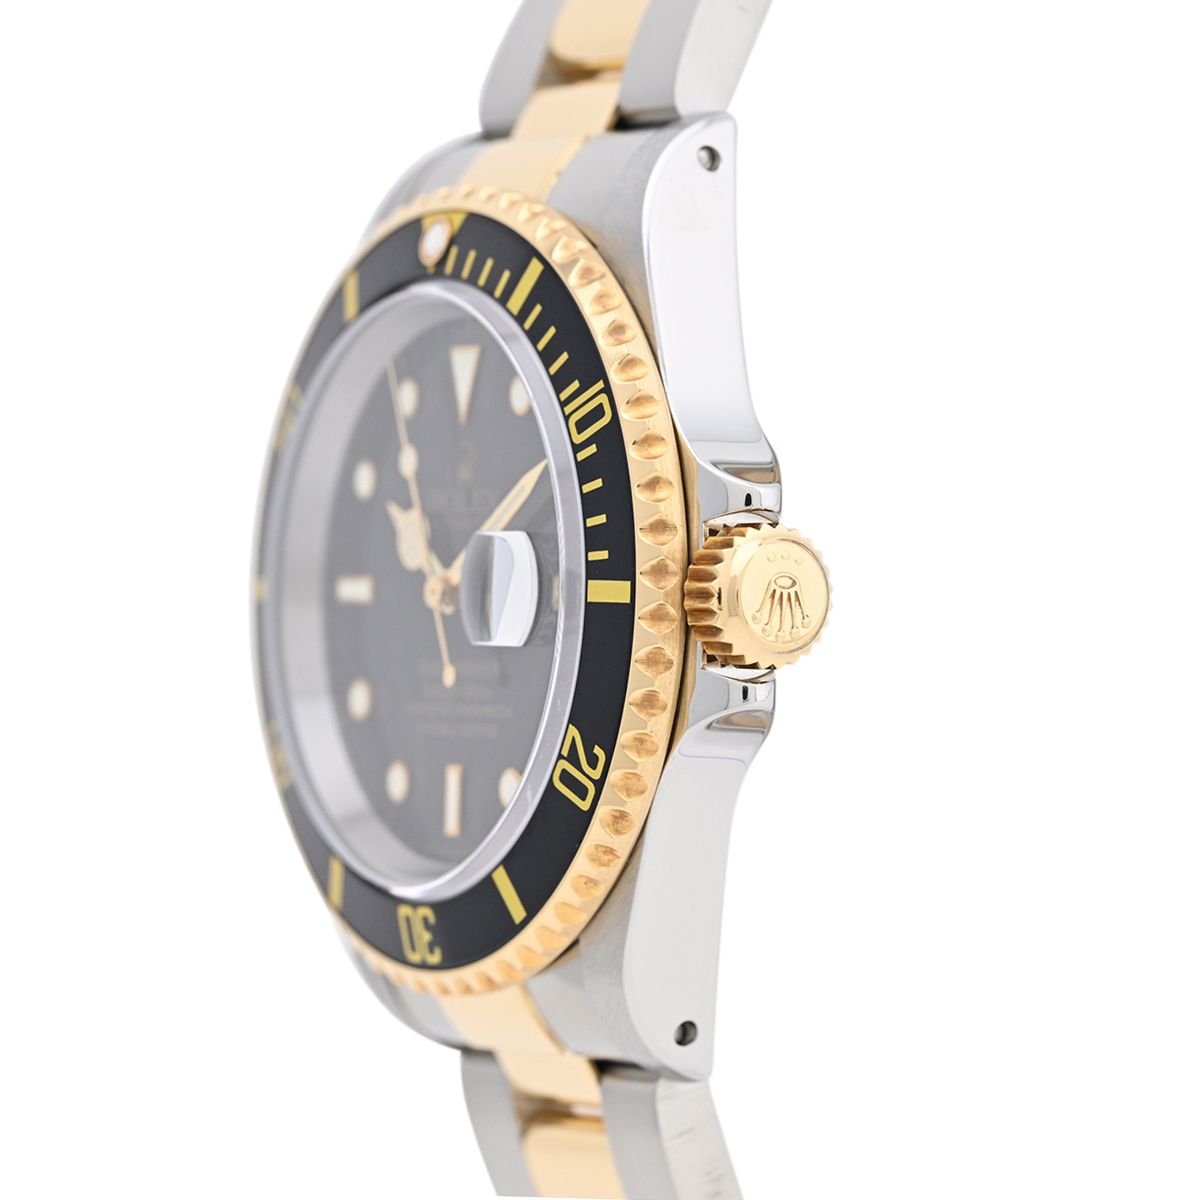 ロレックス サブマリーナデイト16613LN 自動巻き 腕時計 黒 ゴールド